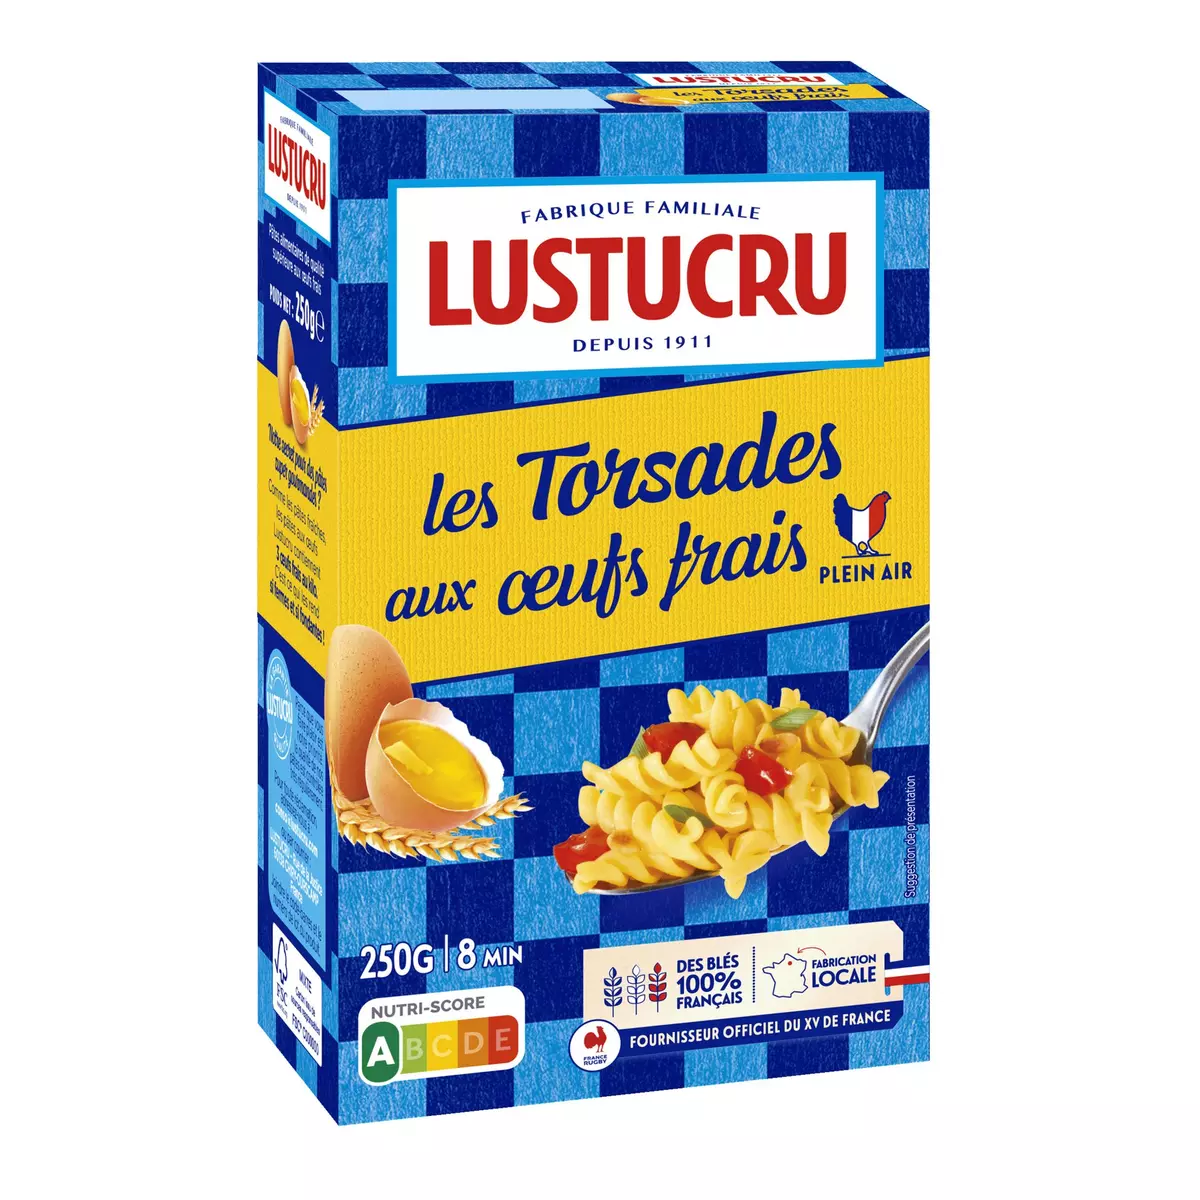 LUSTUCRU Torsettes aux œufs frais, fabriqué en France 250g